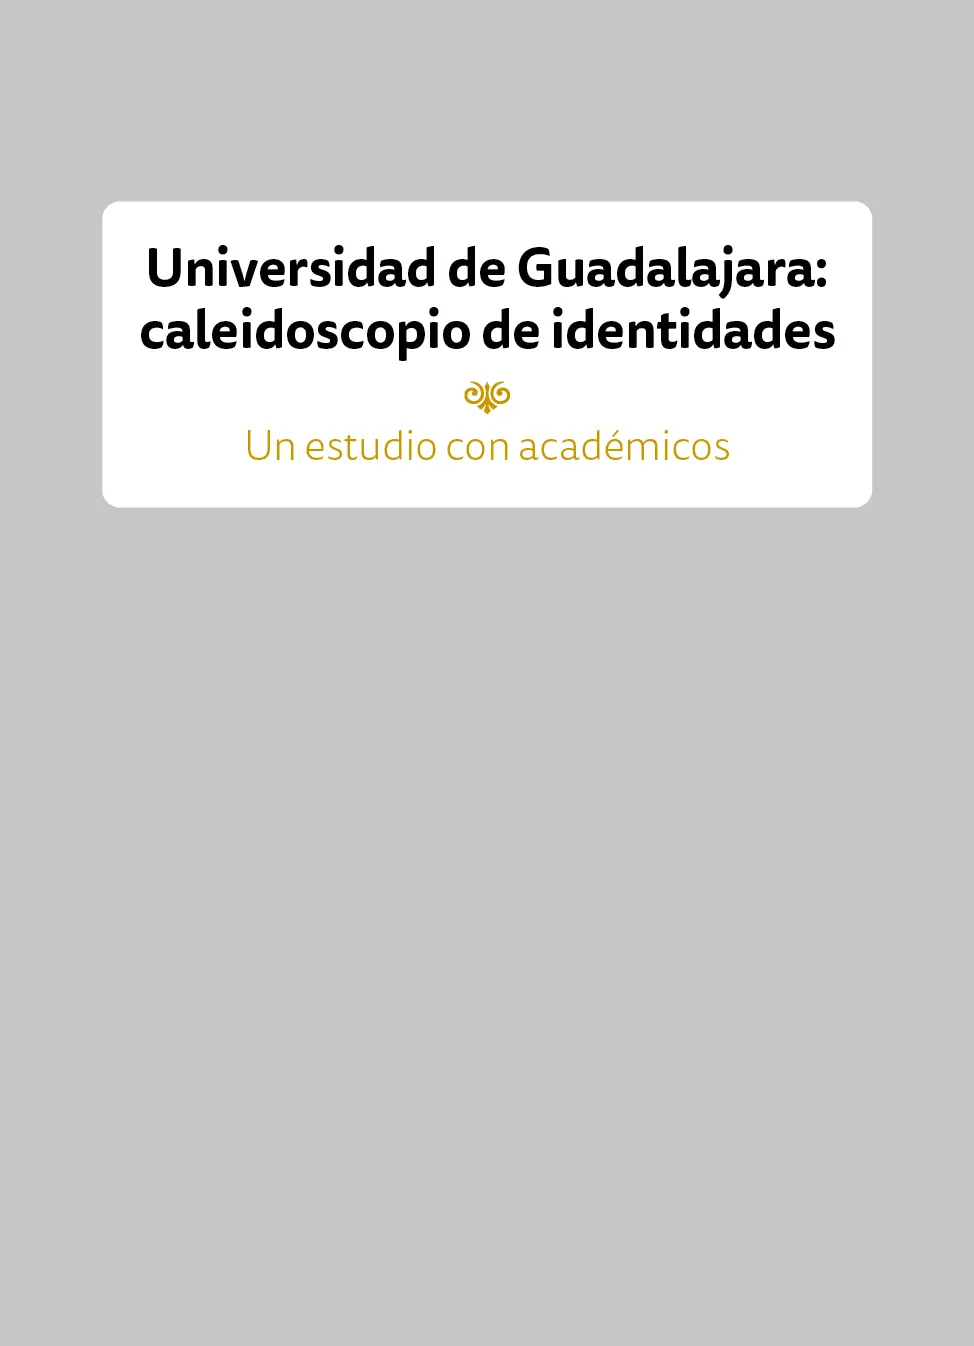 Universidad de Guadalajara caleidoscopio de identidades - фото 1